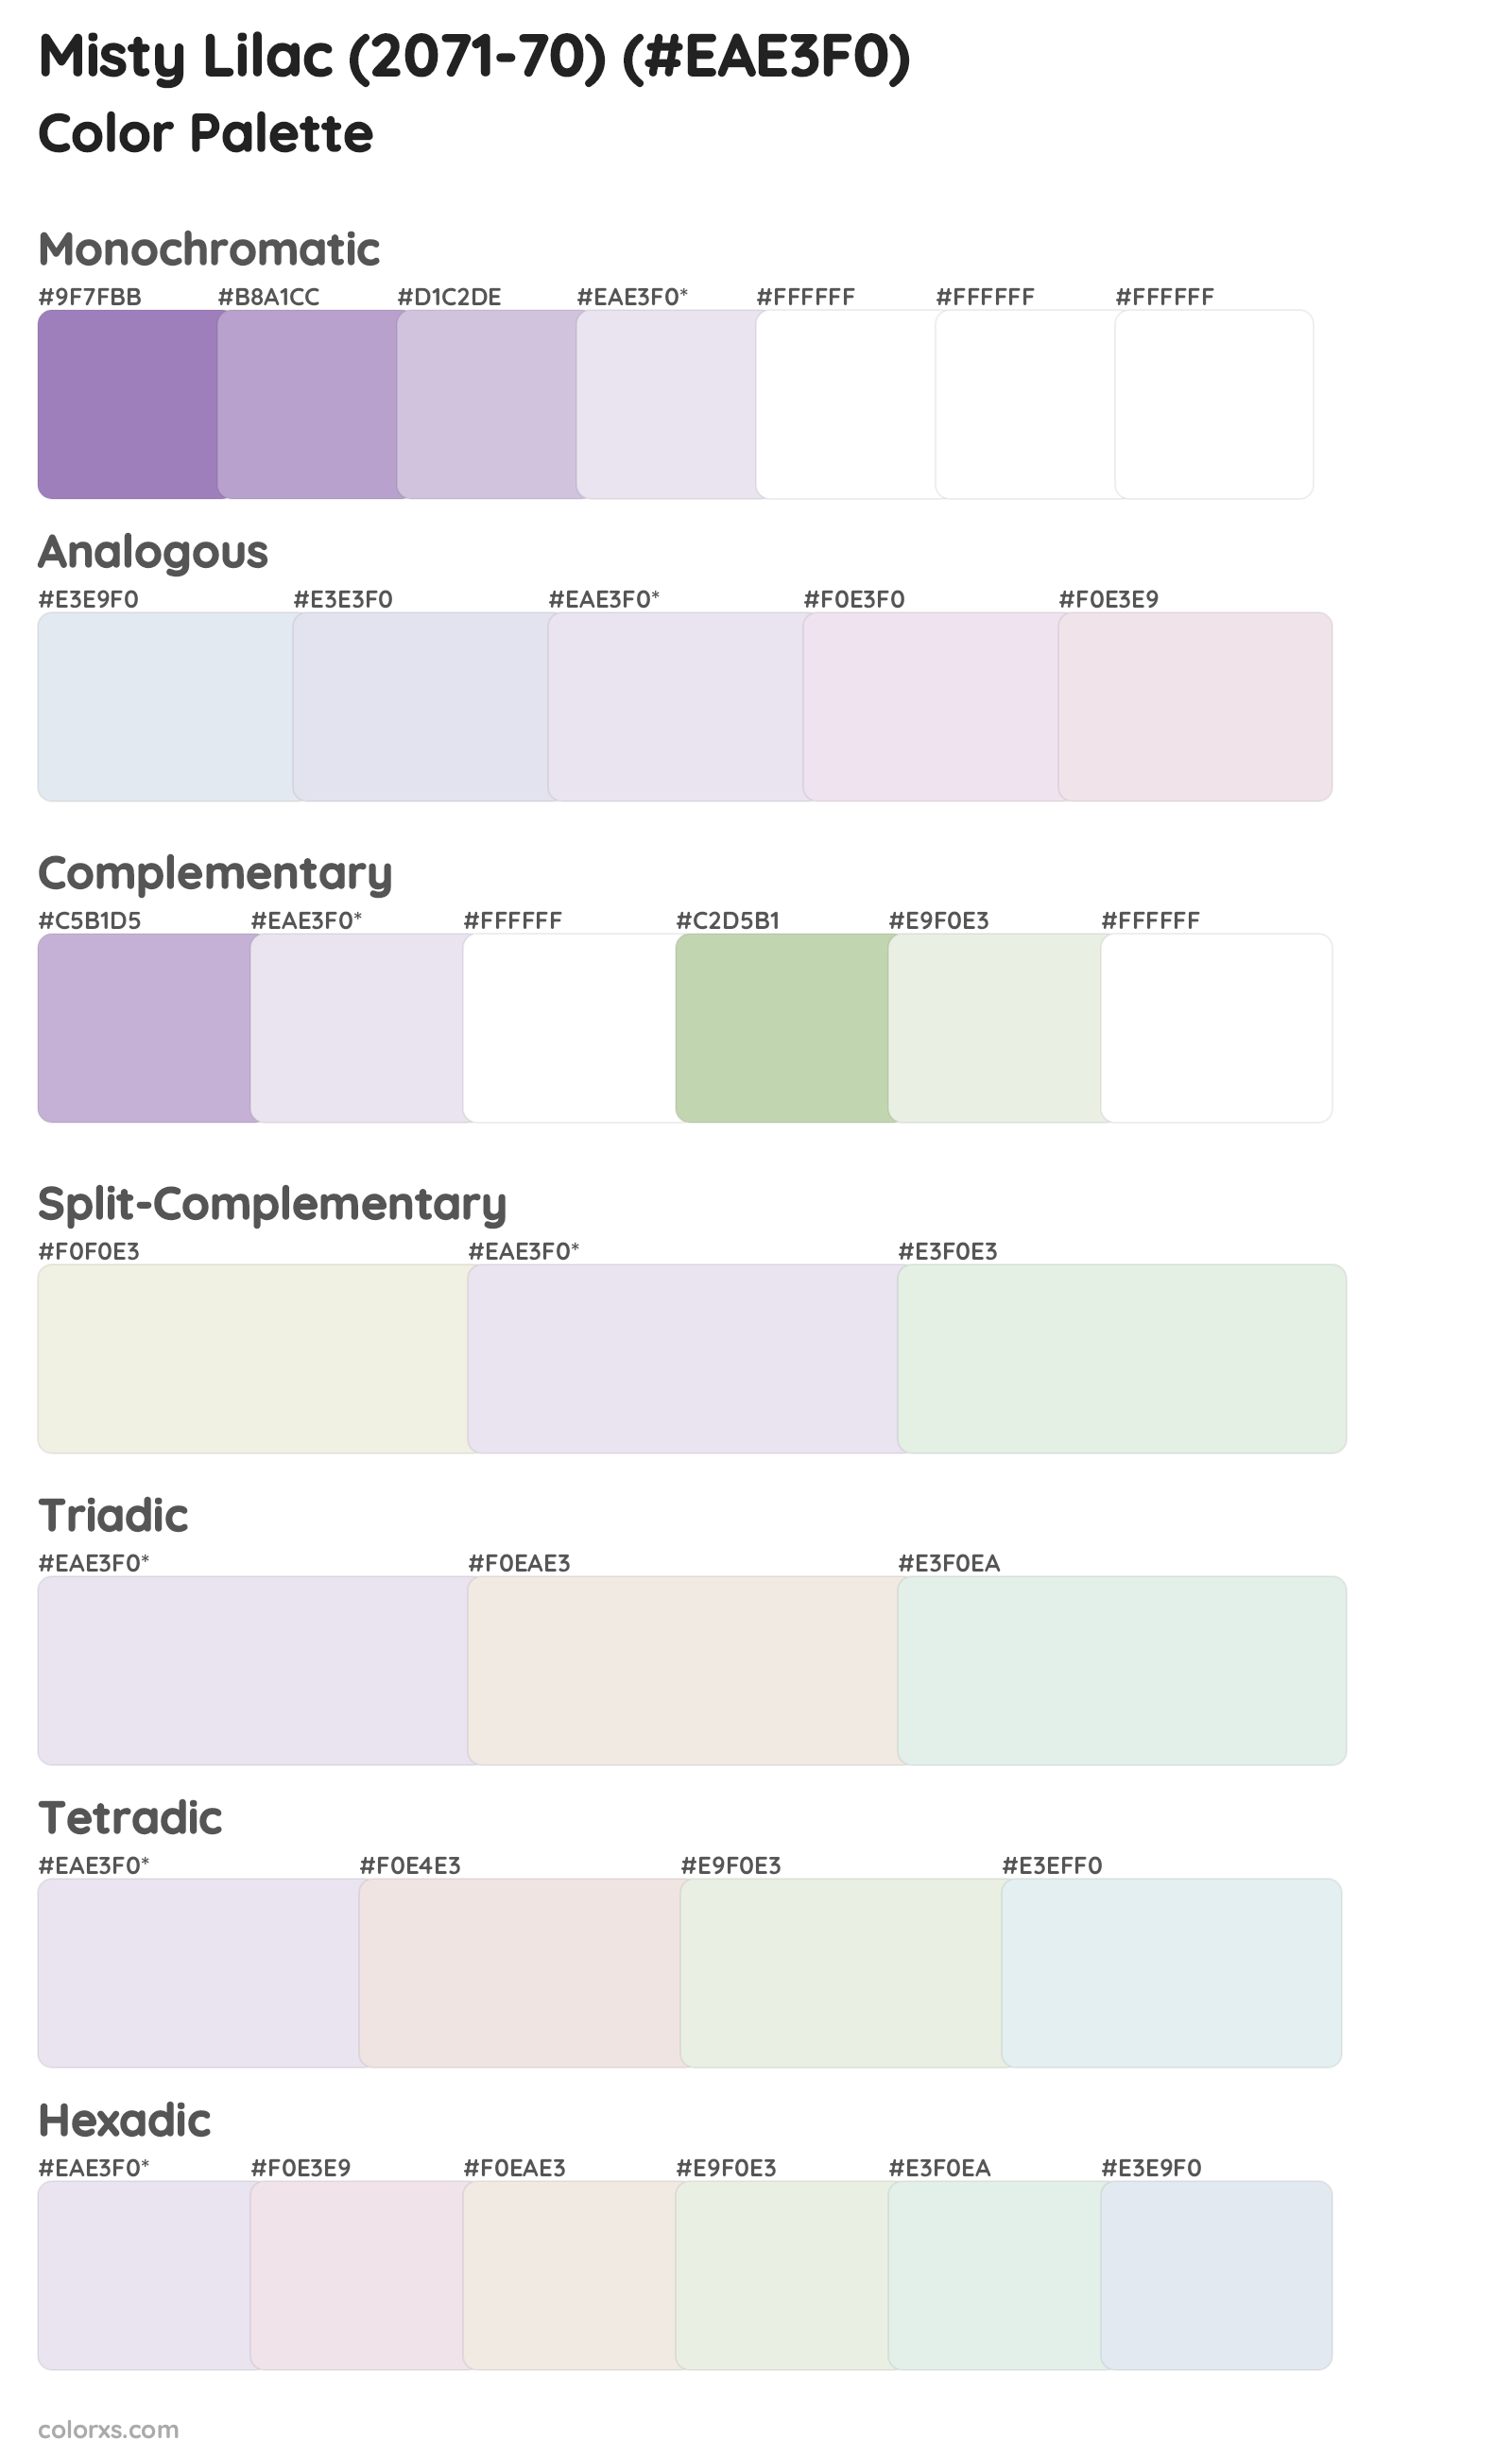 Misty Lilac (2071-70) Color Scheme Palettes